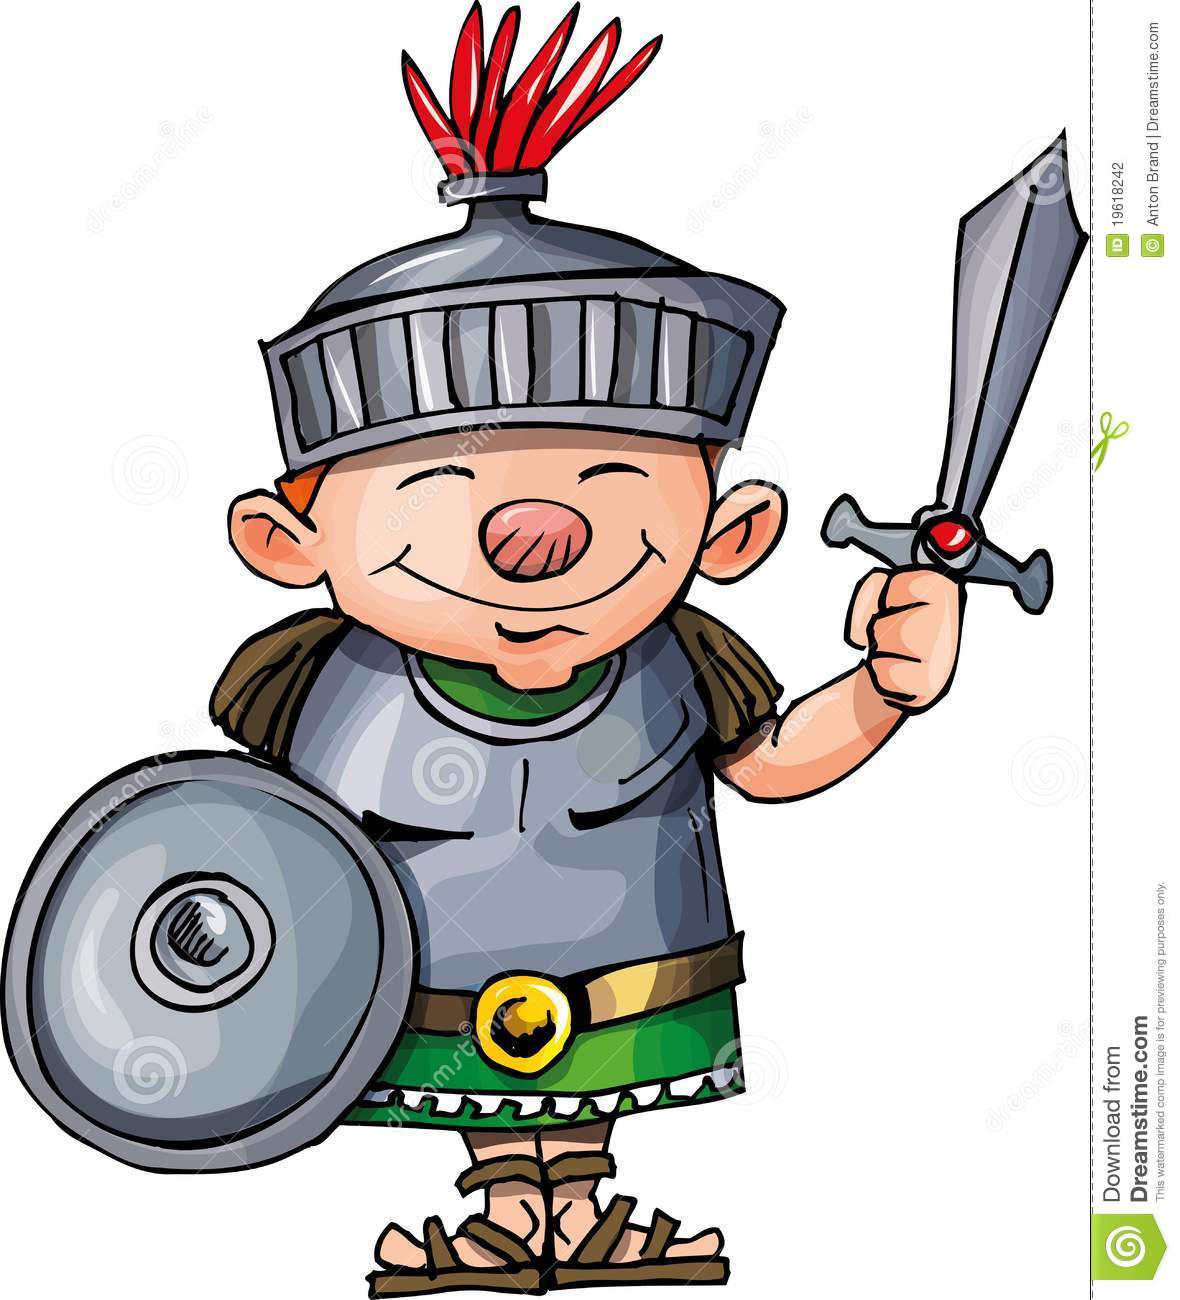 Cartoon Roman Legionary With Sword And Shield Stock Photography    